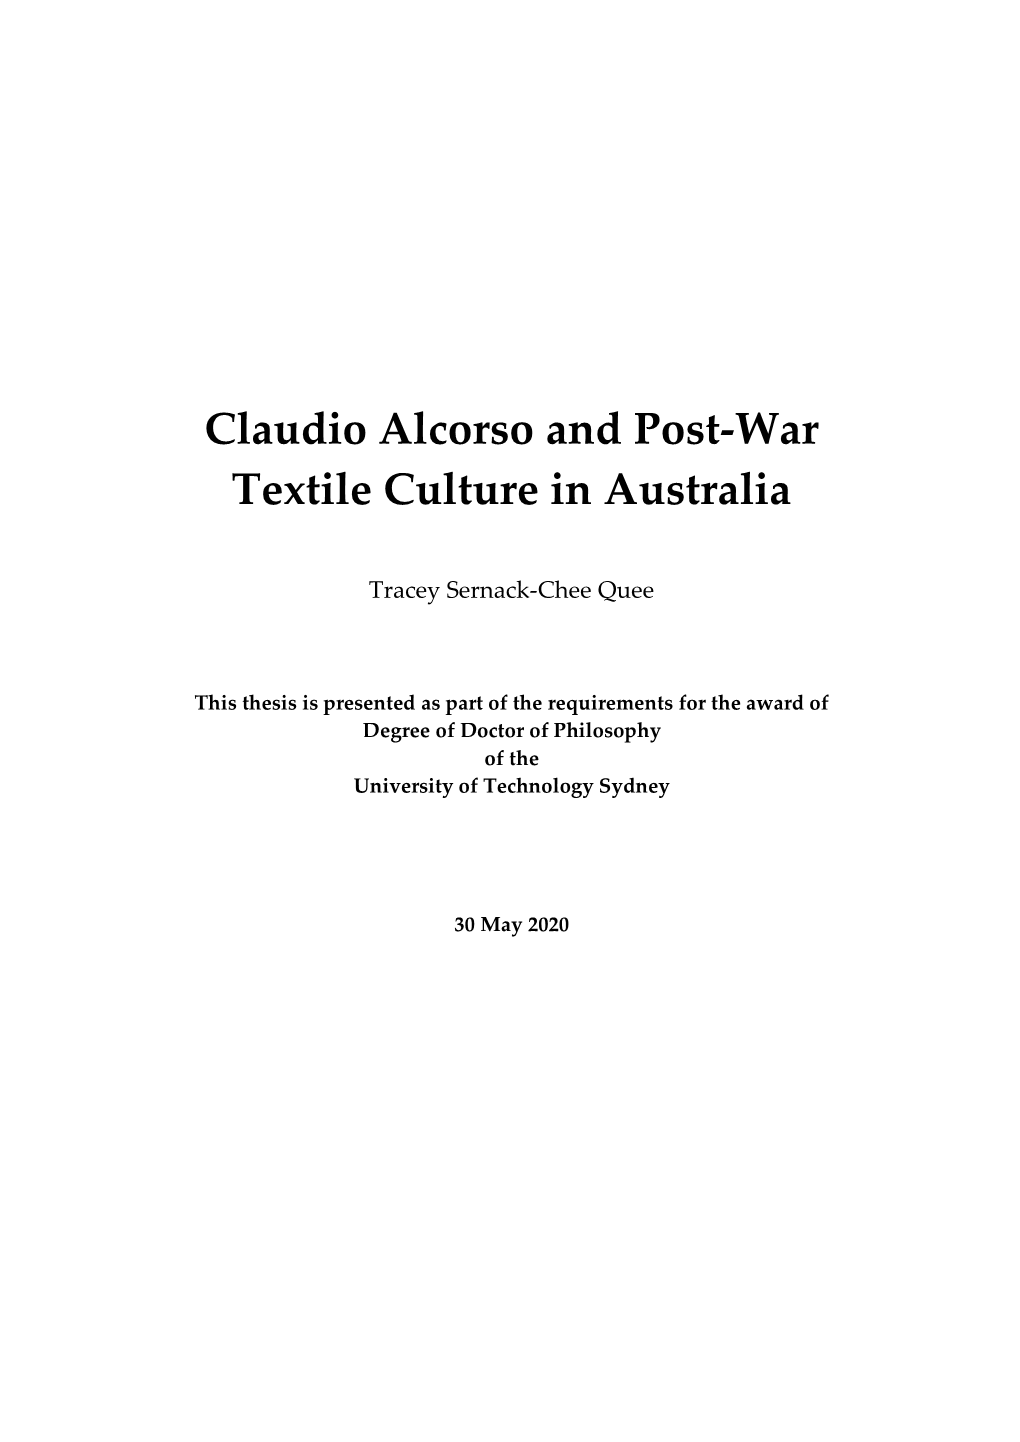 Claudio Alcorso and Post-War Textile Culture in Australia